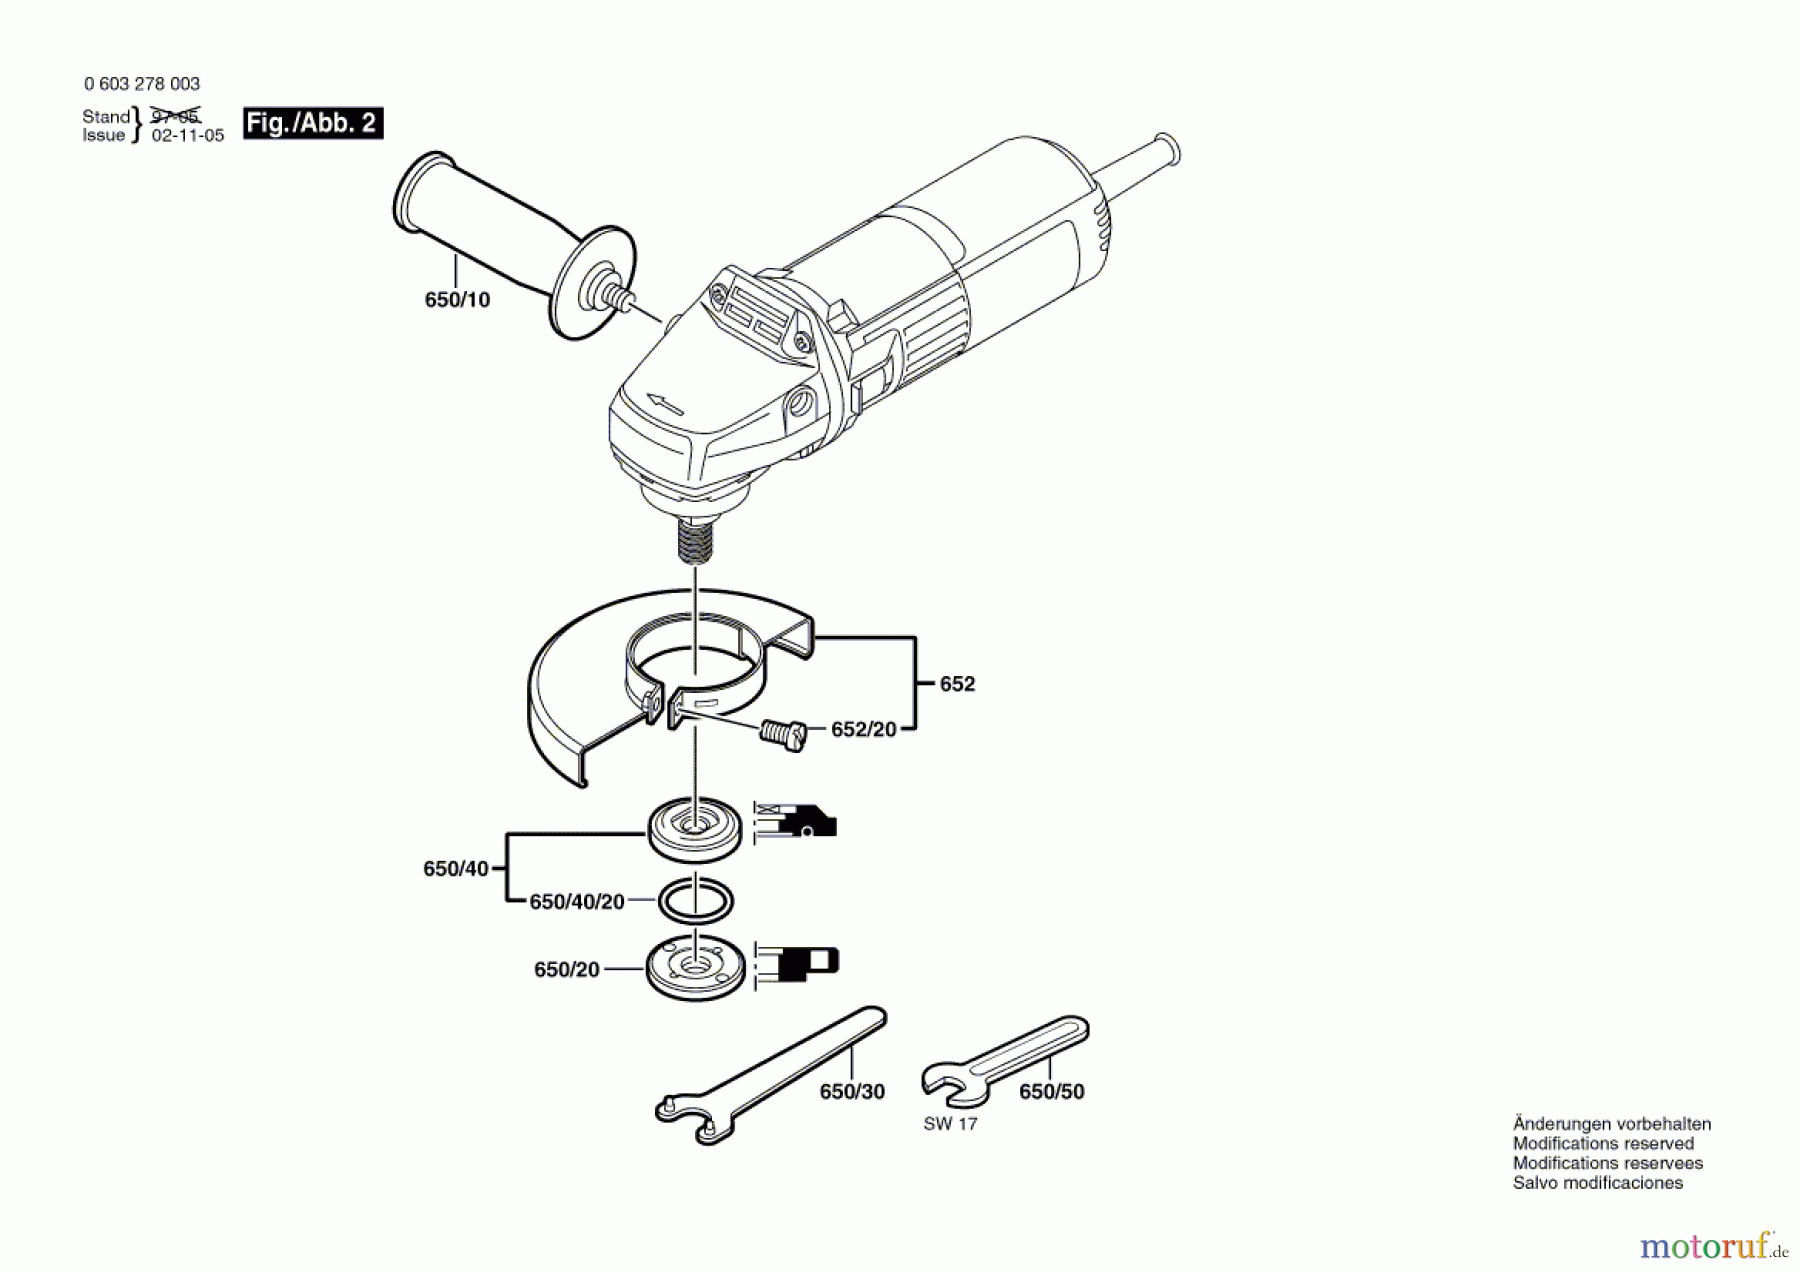  Bosch Werkzeug Hw-Winkelschleifer PWS 5-115 Seite 2